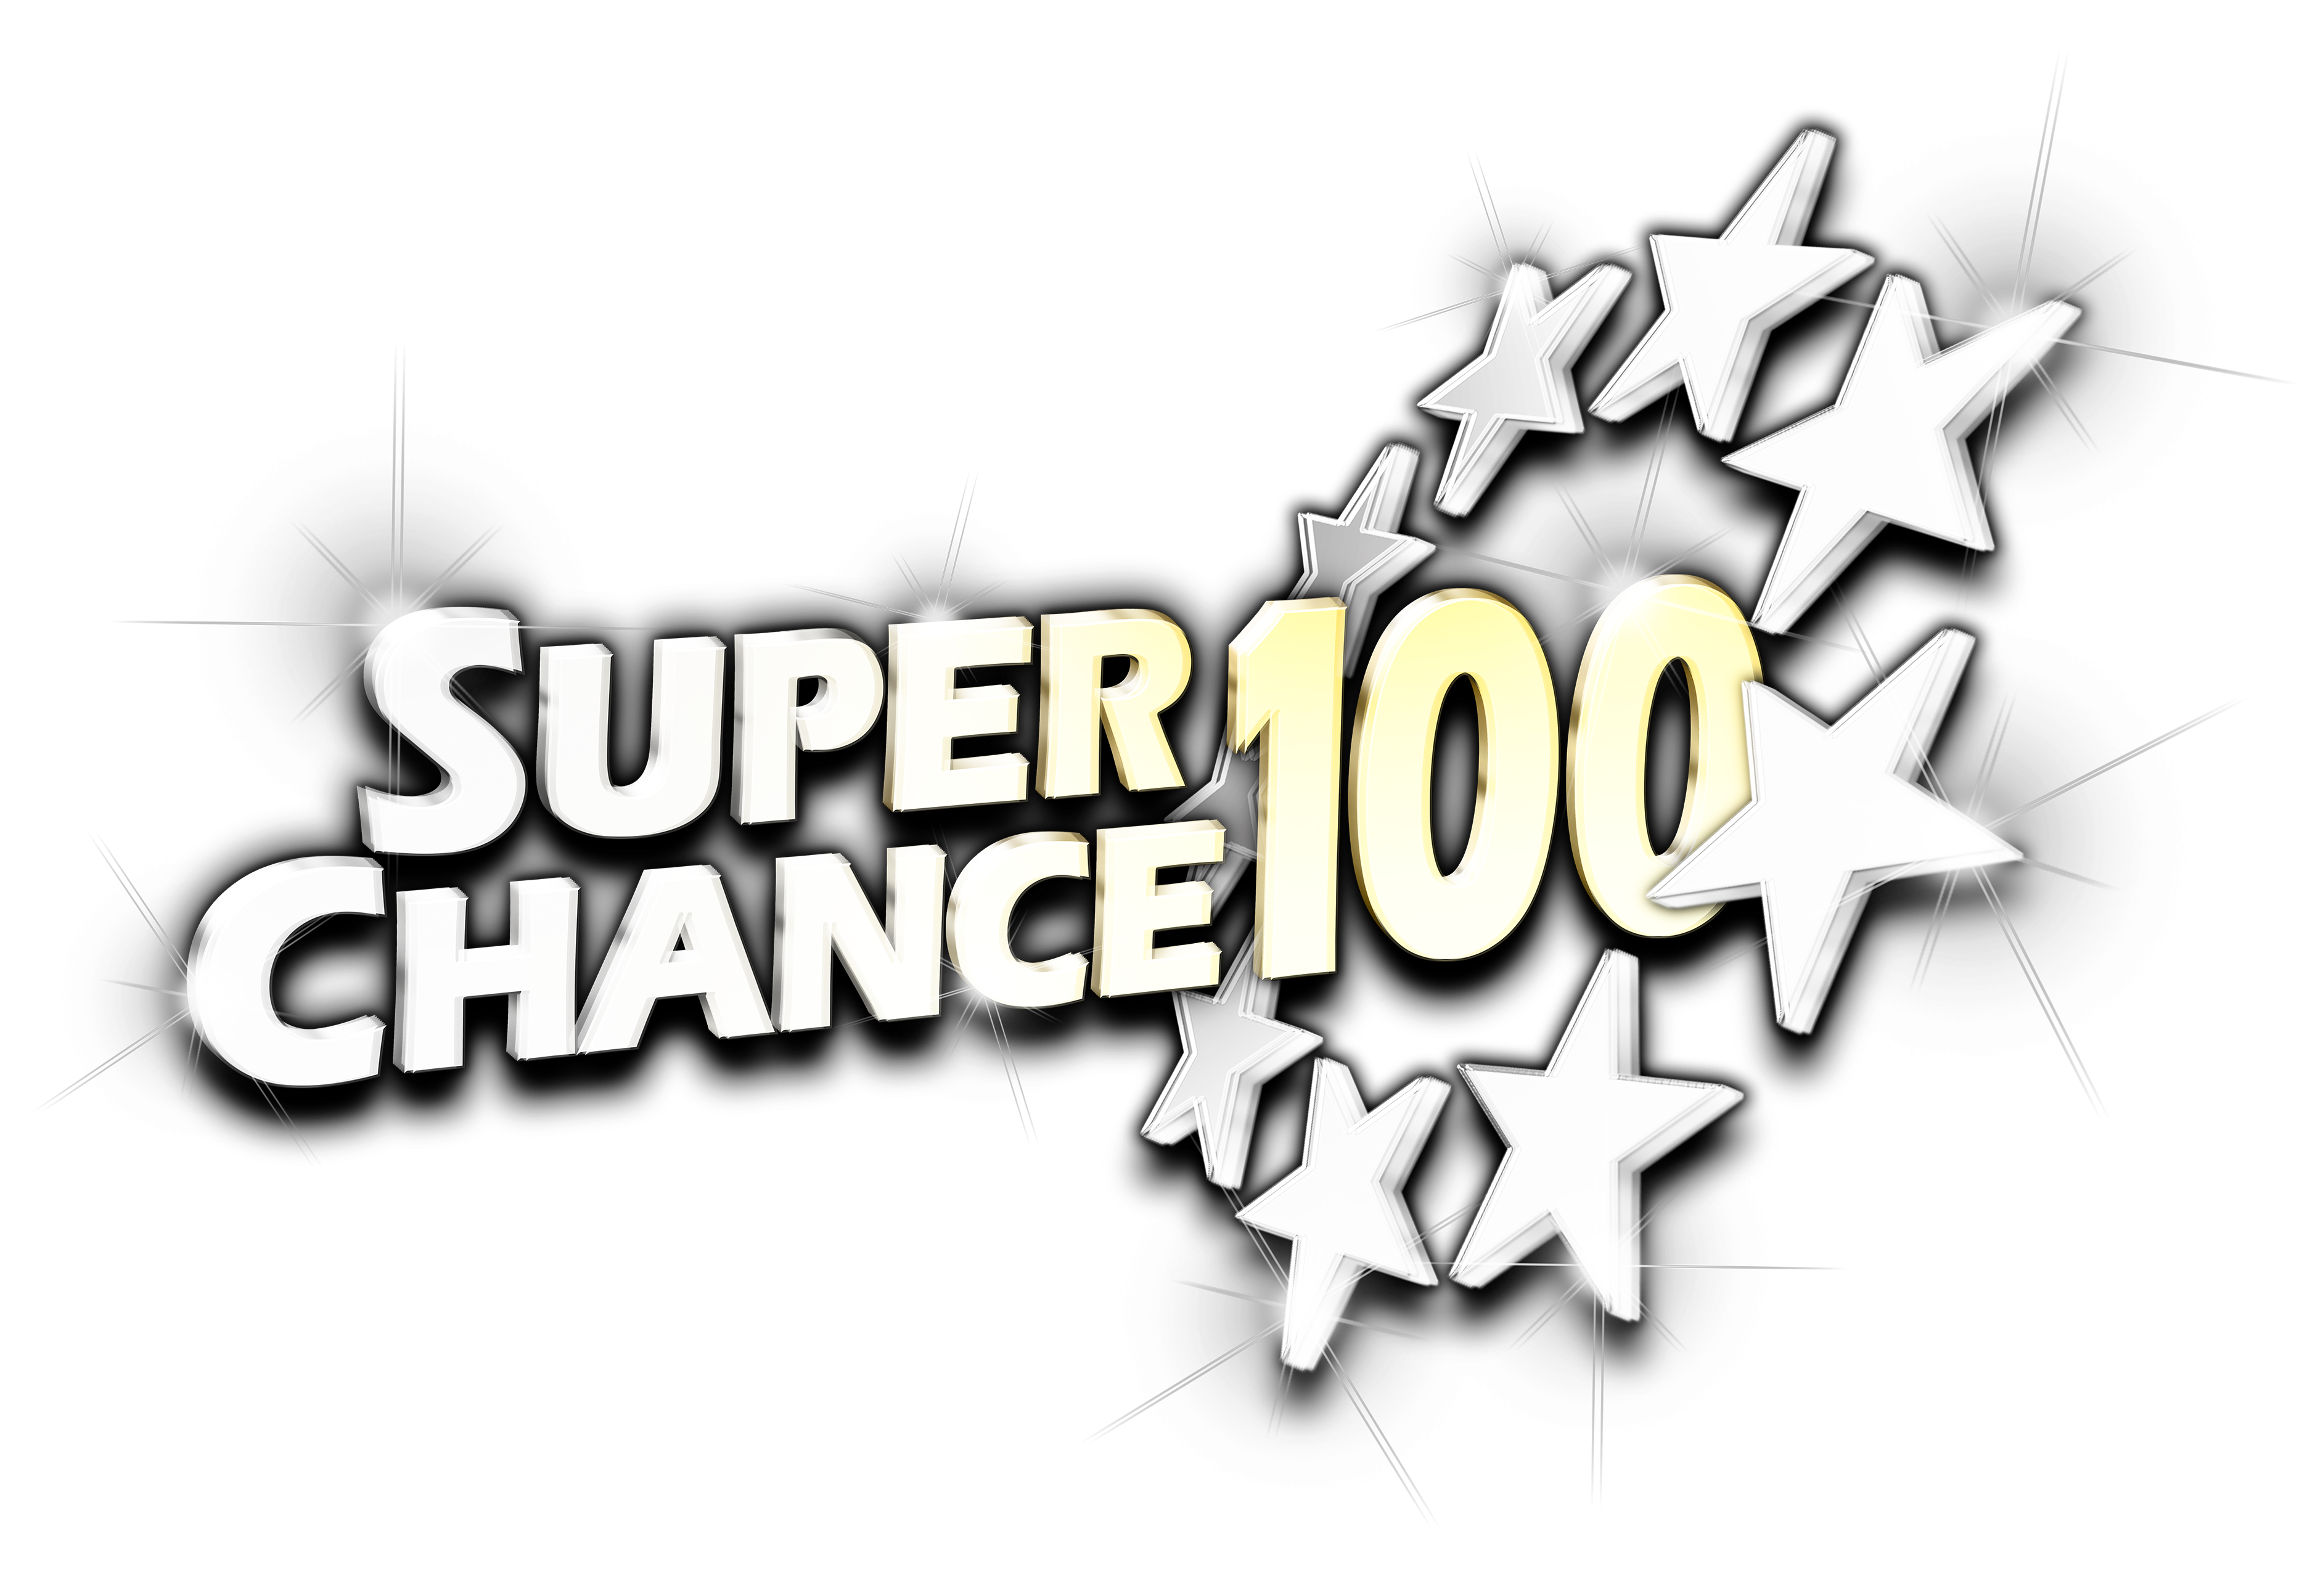 superchance100